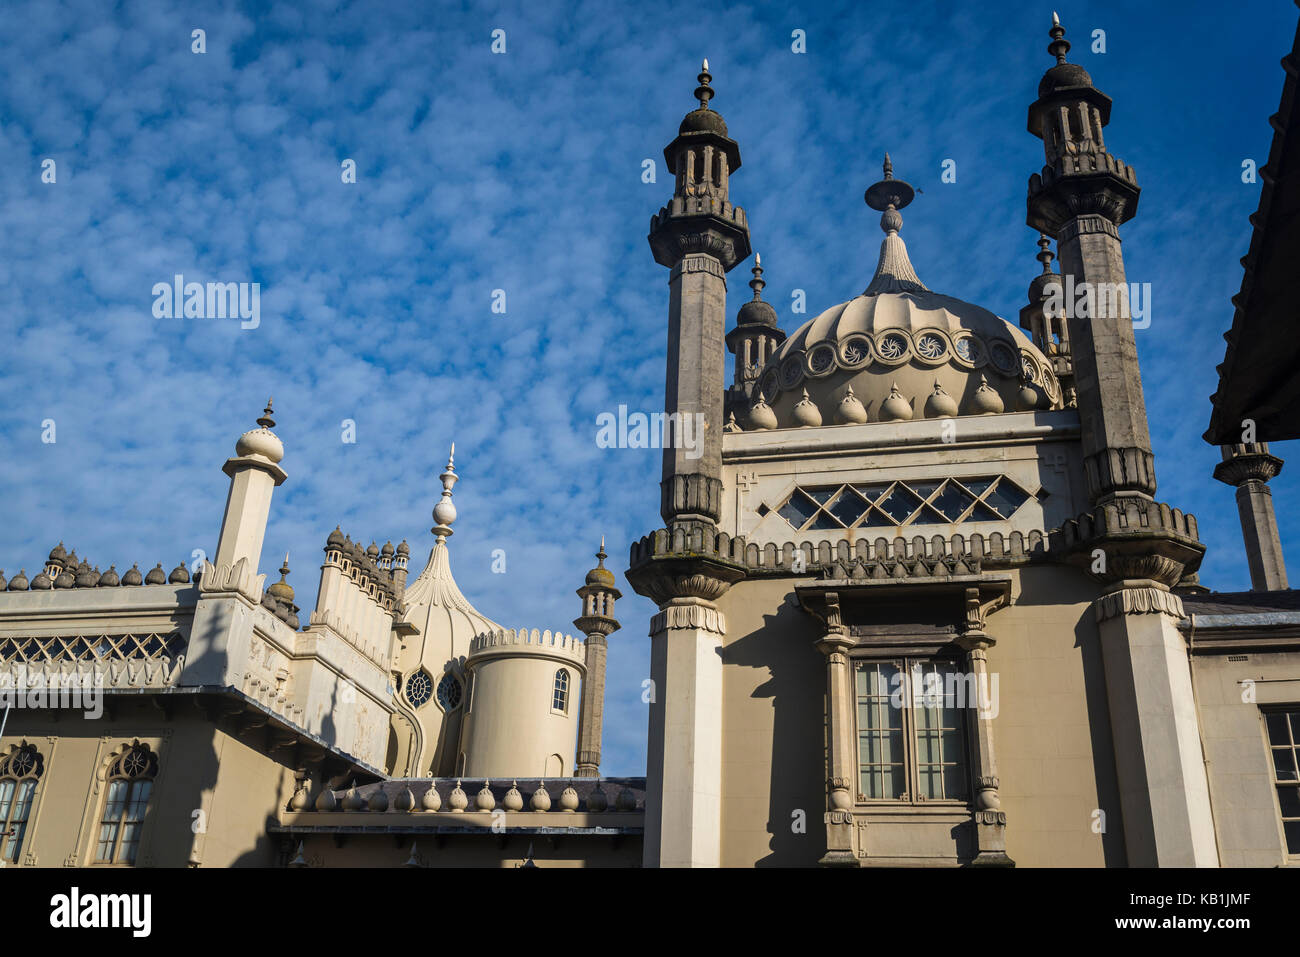 Royal Pavilion, Brighton, England, UK Stock Photo